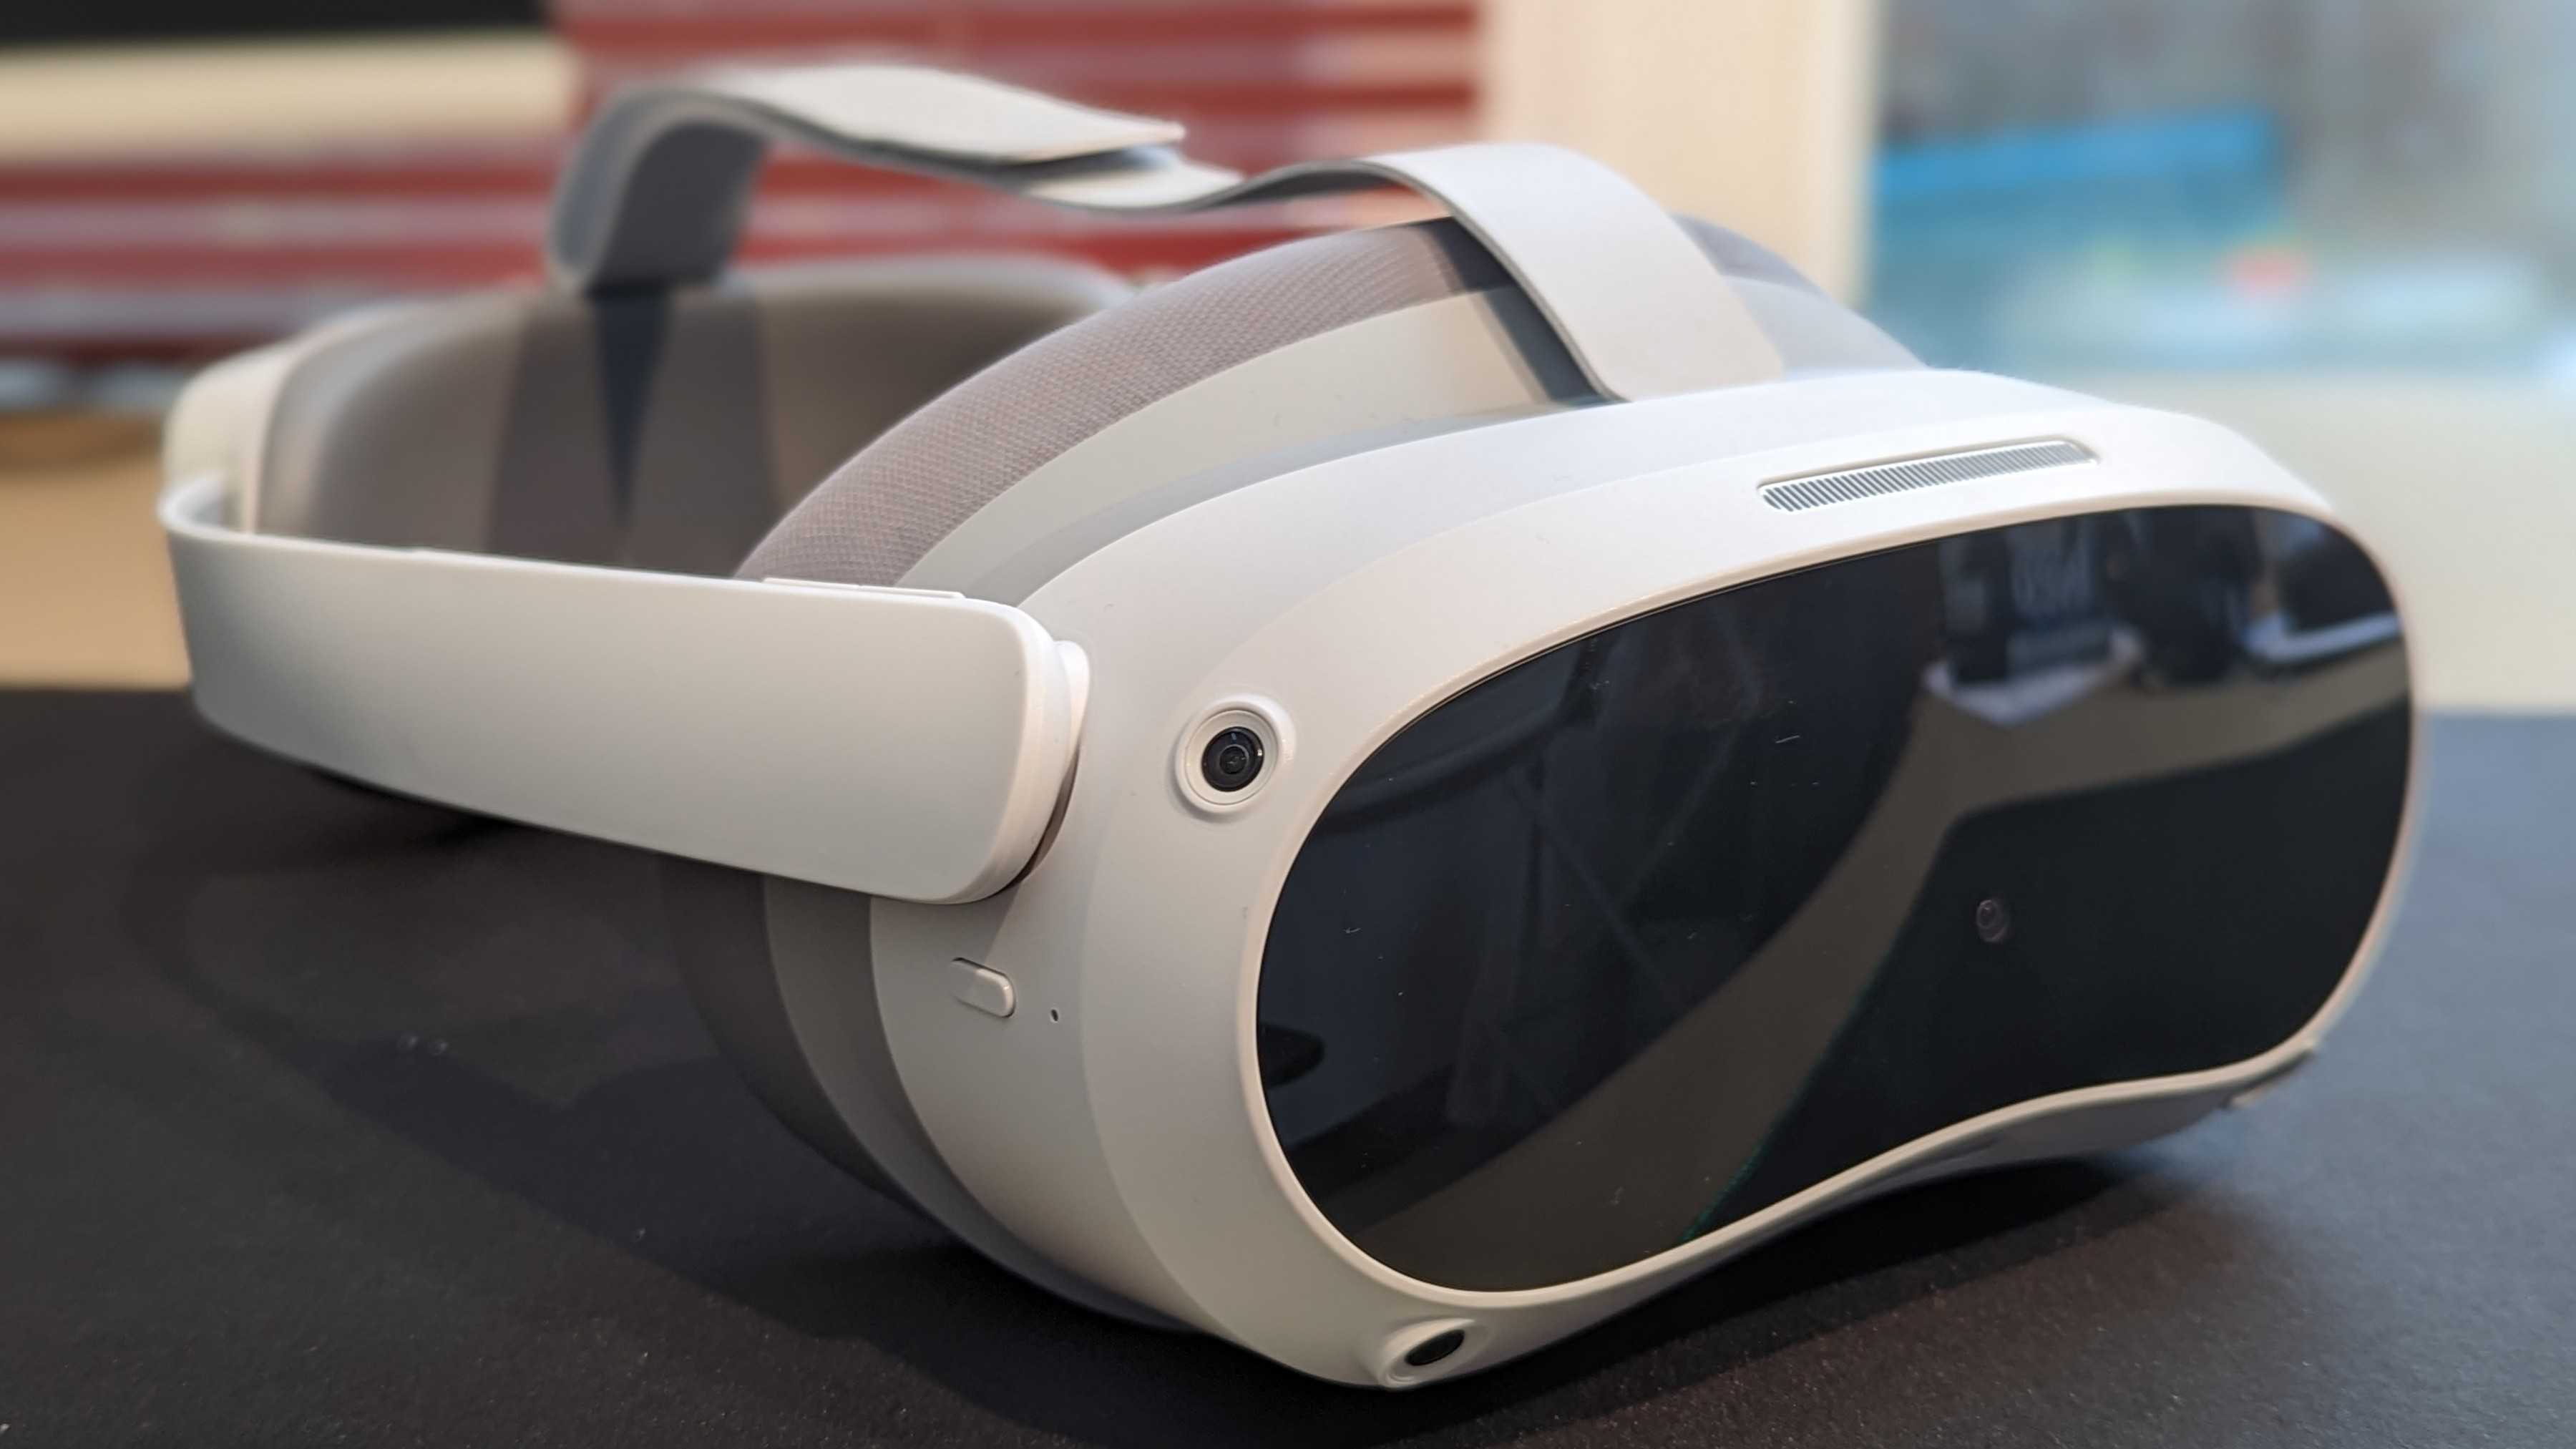 Pico 4 VR Review: A True Quest 2 Competitor - Tech Advisor